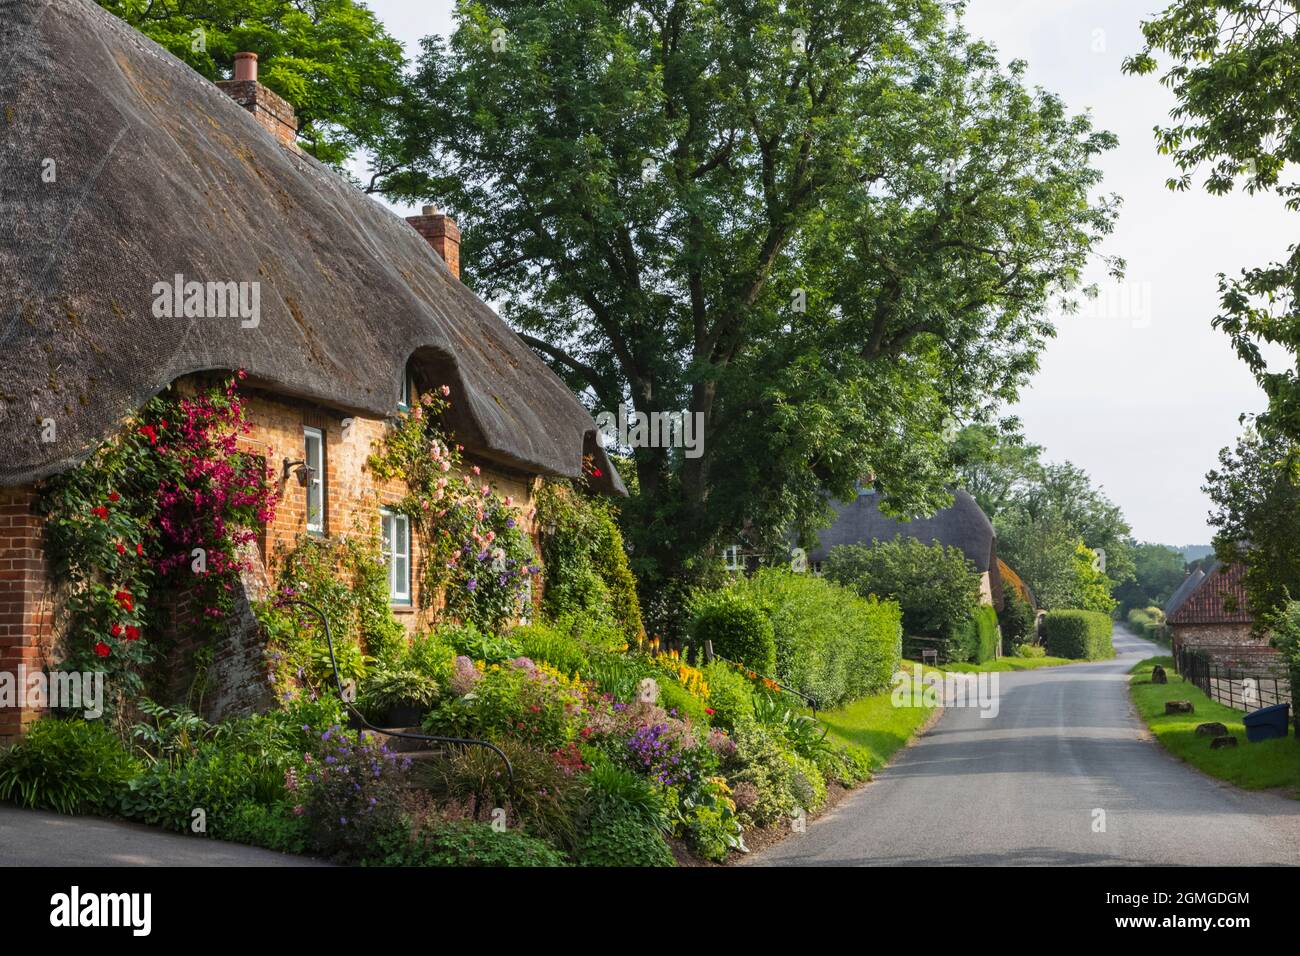 Inghilterra, Hampshire, test Valley, Stockbridge, Longstock villiage, tradizionale casa sul tetto in paglia e strada vuota Foto Stock